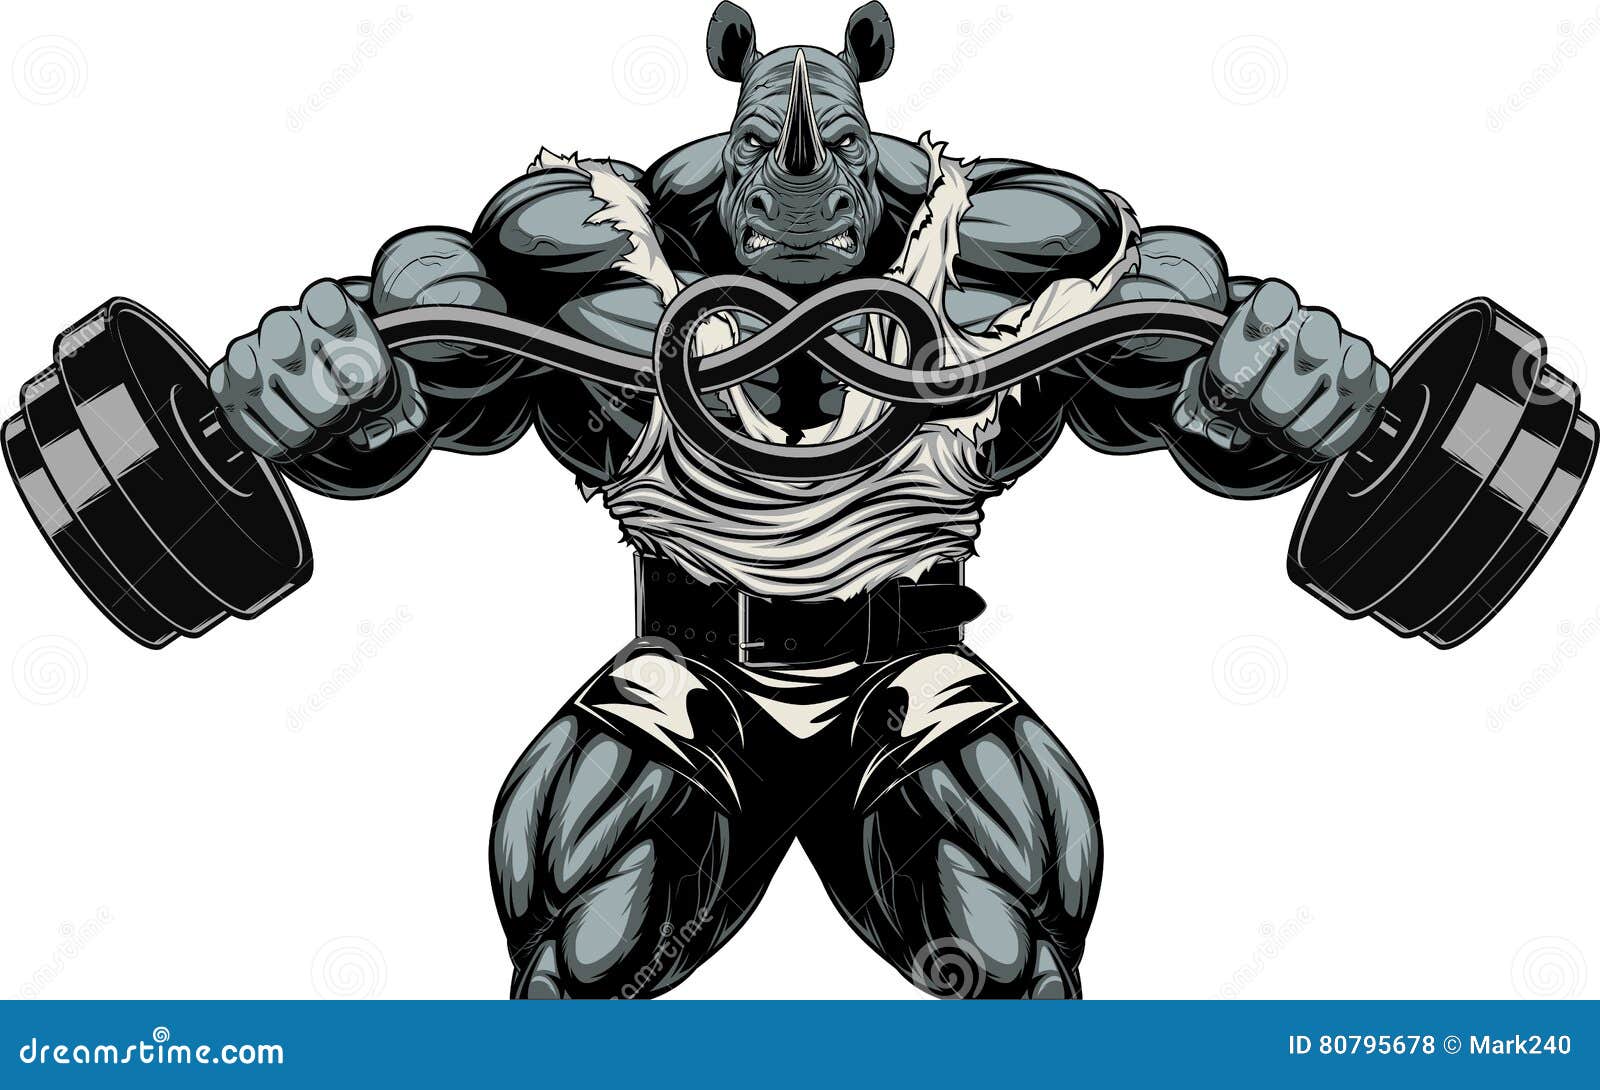 ferocious rhino athlete